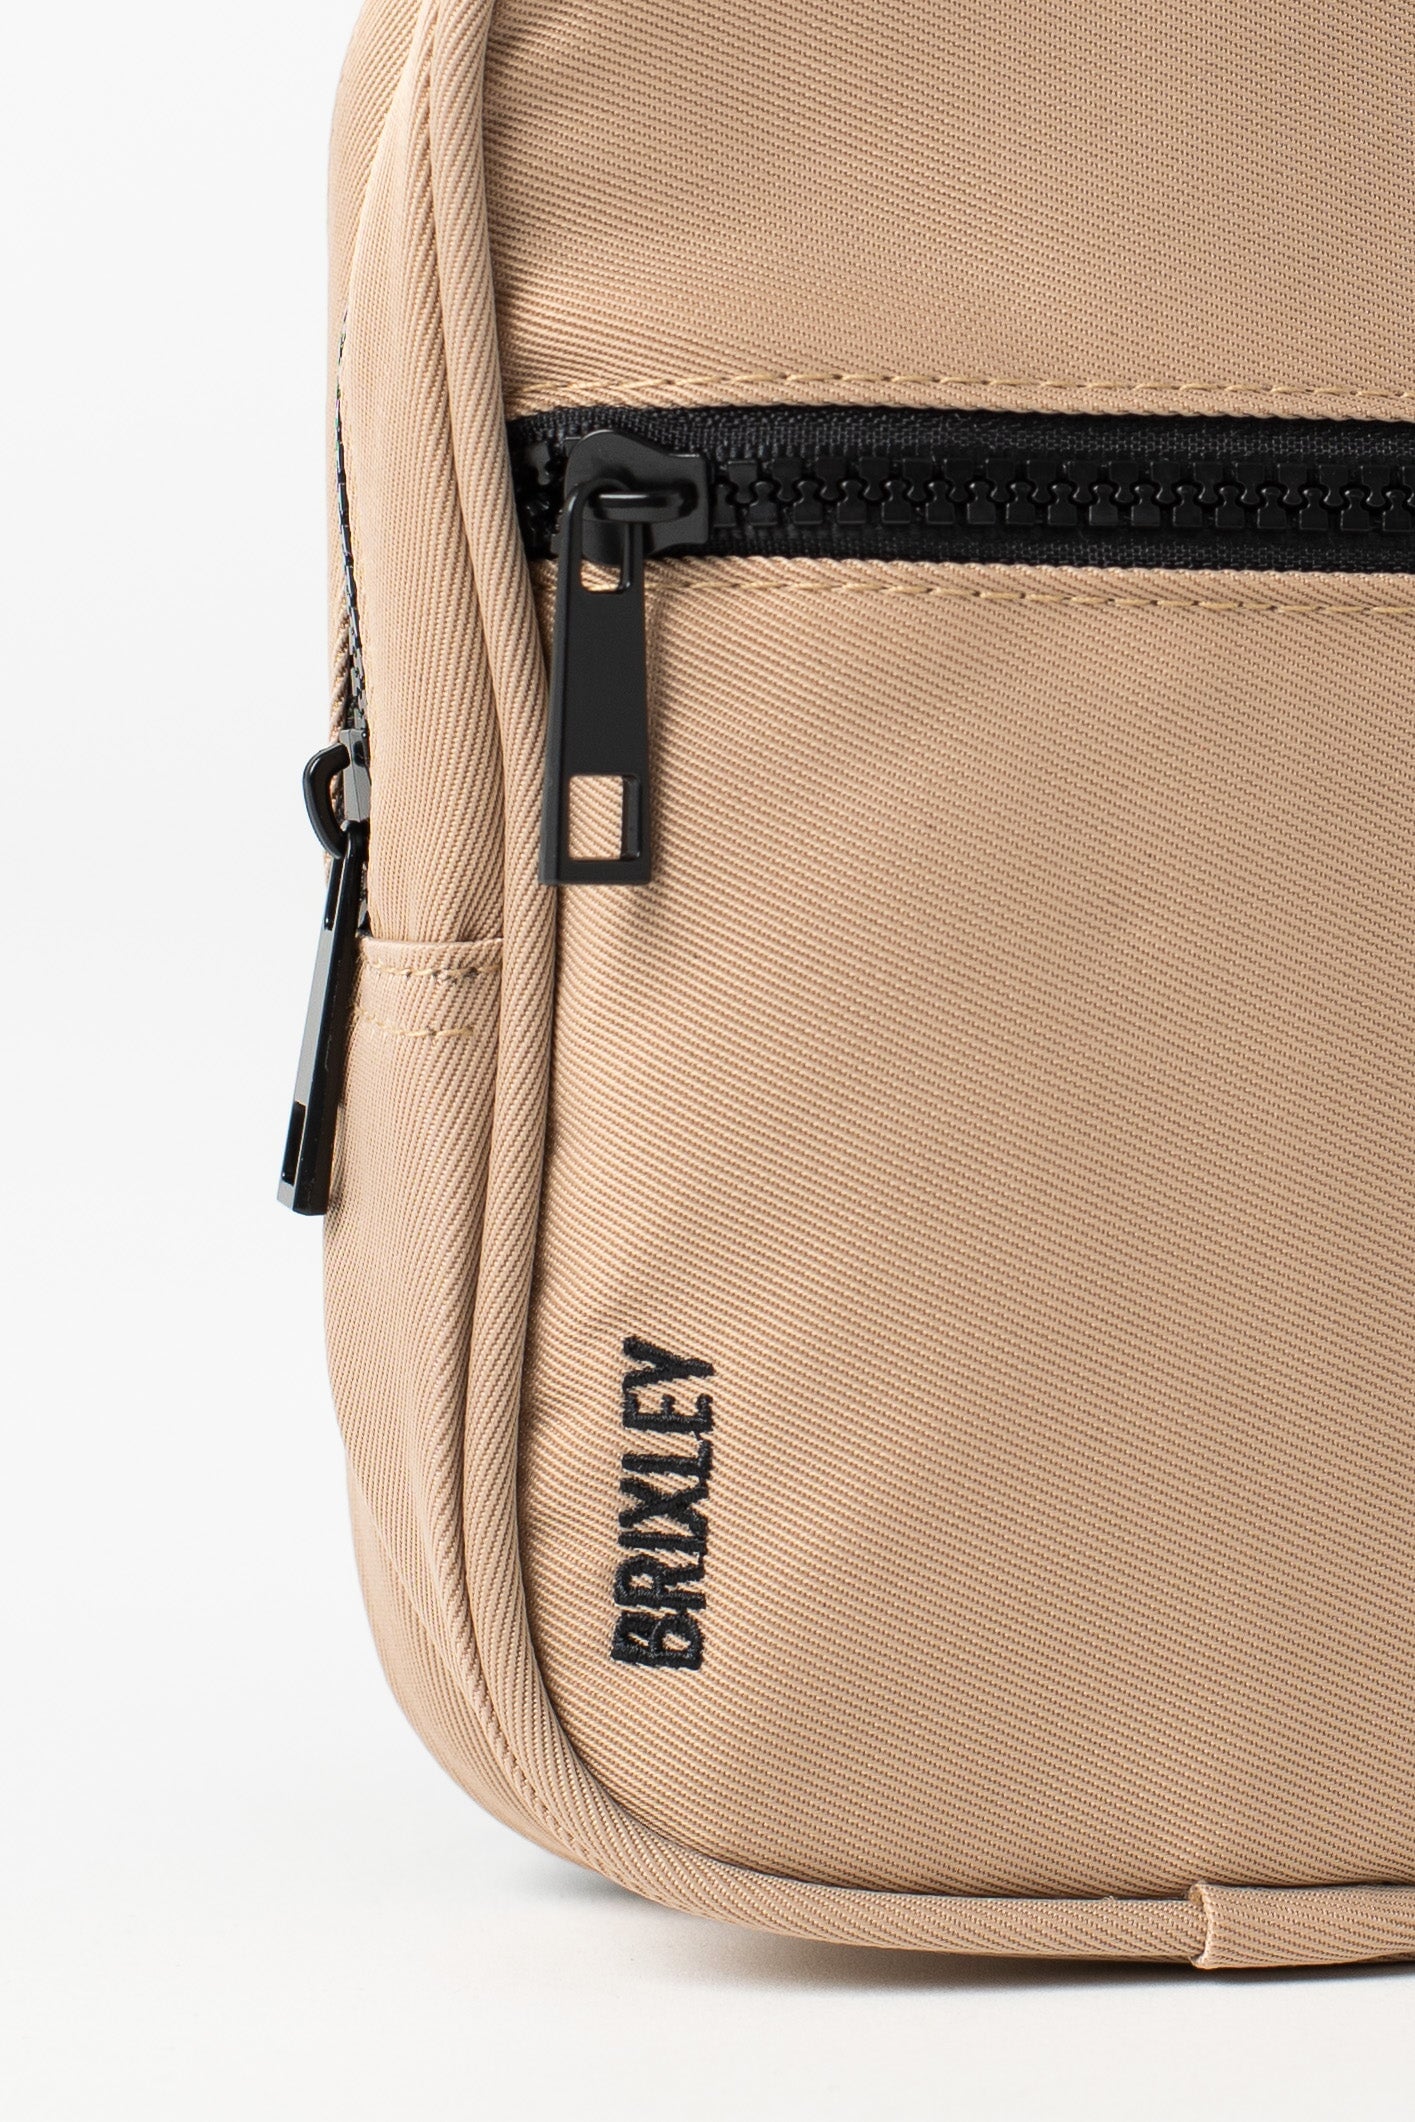 BRIC'S(ブリックス) Brix Life Shoulder Bag, Camel: Handbags: Amazon.com